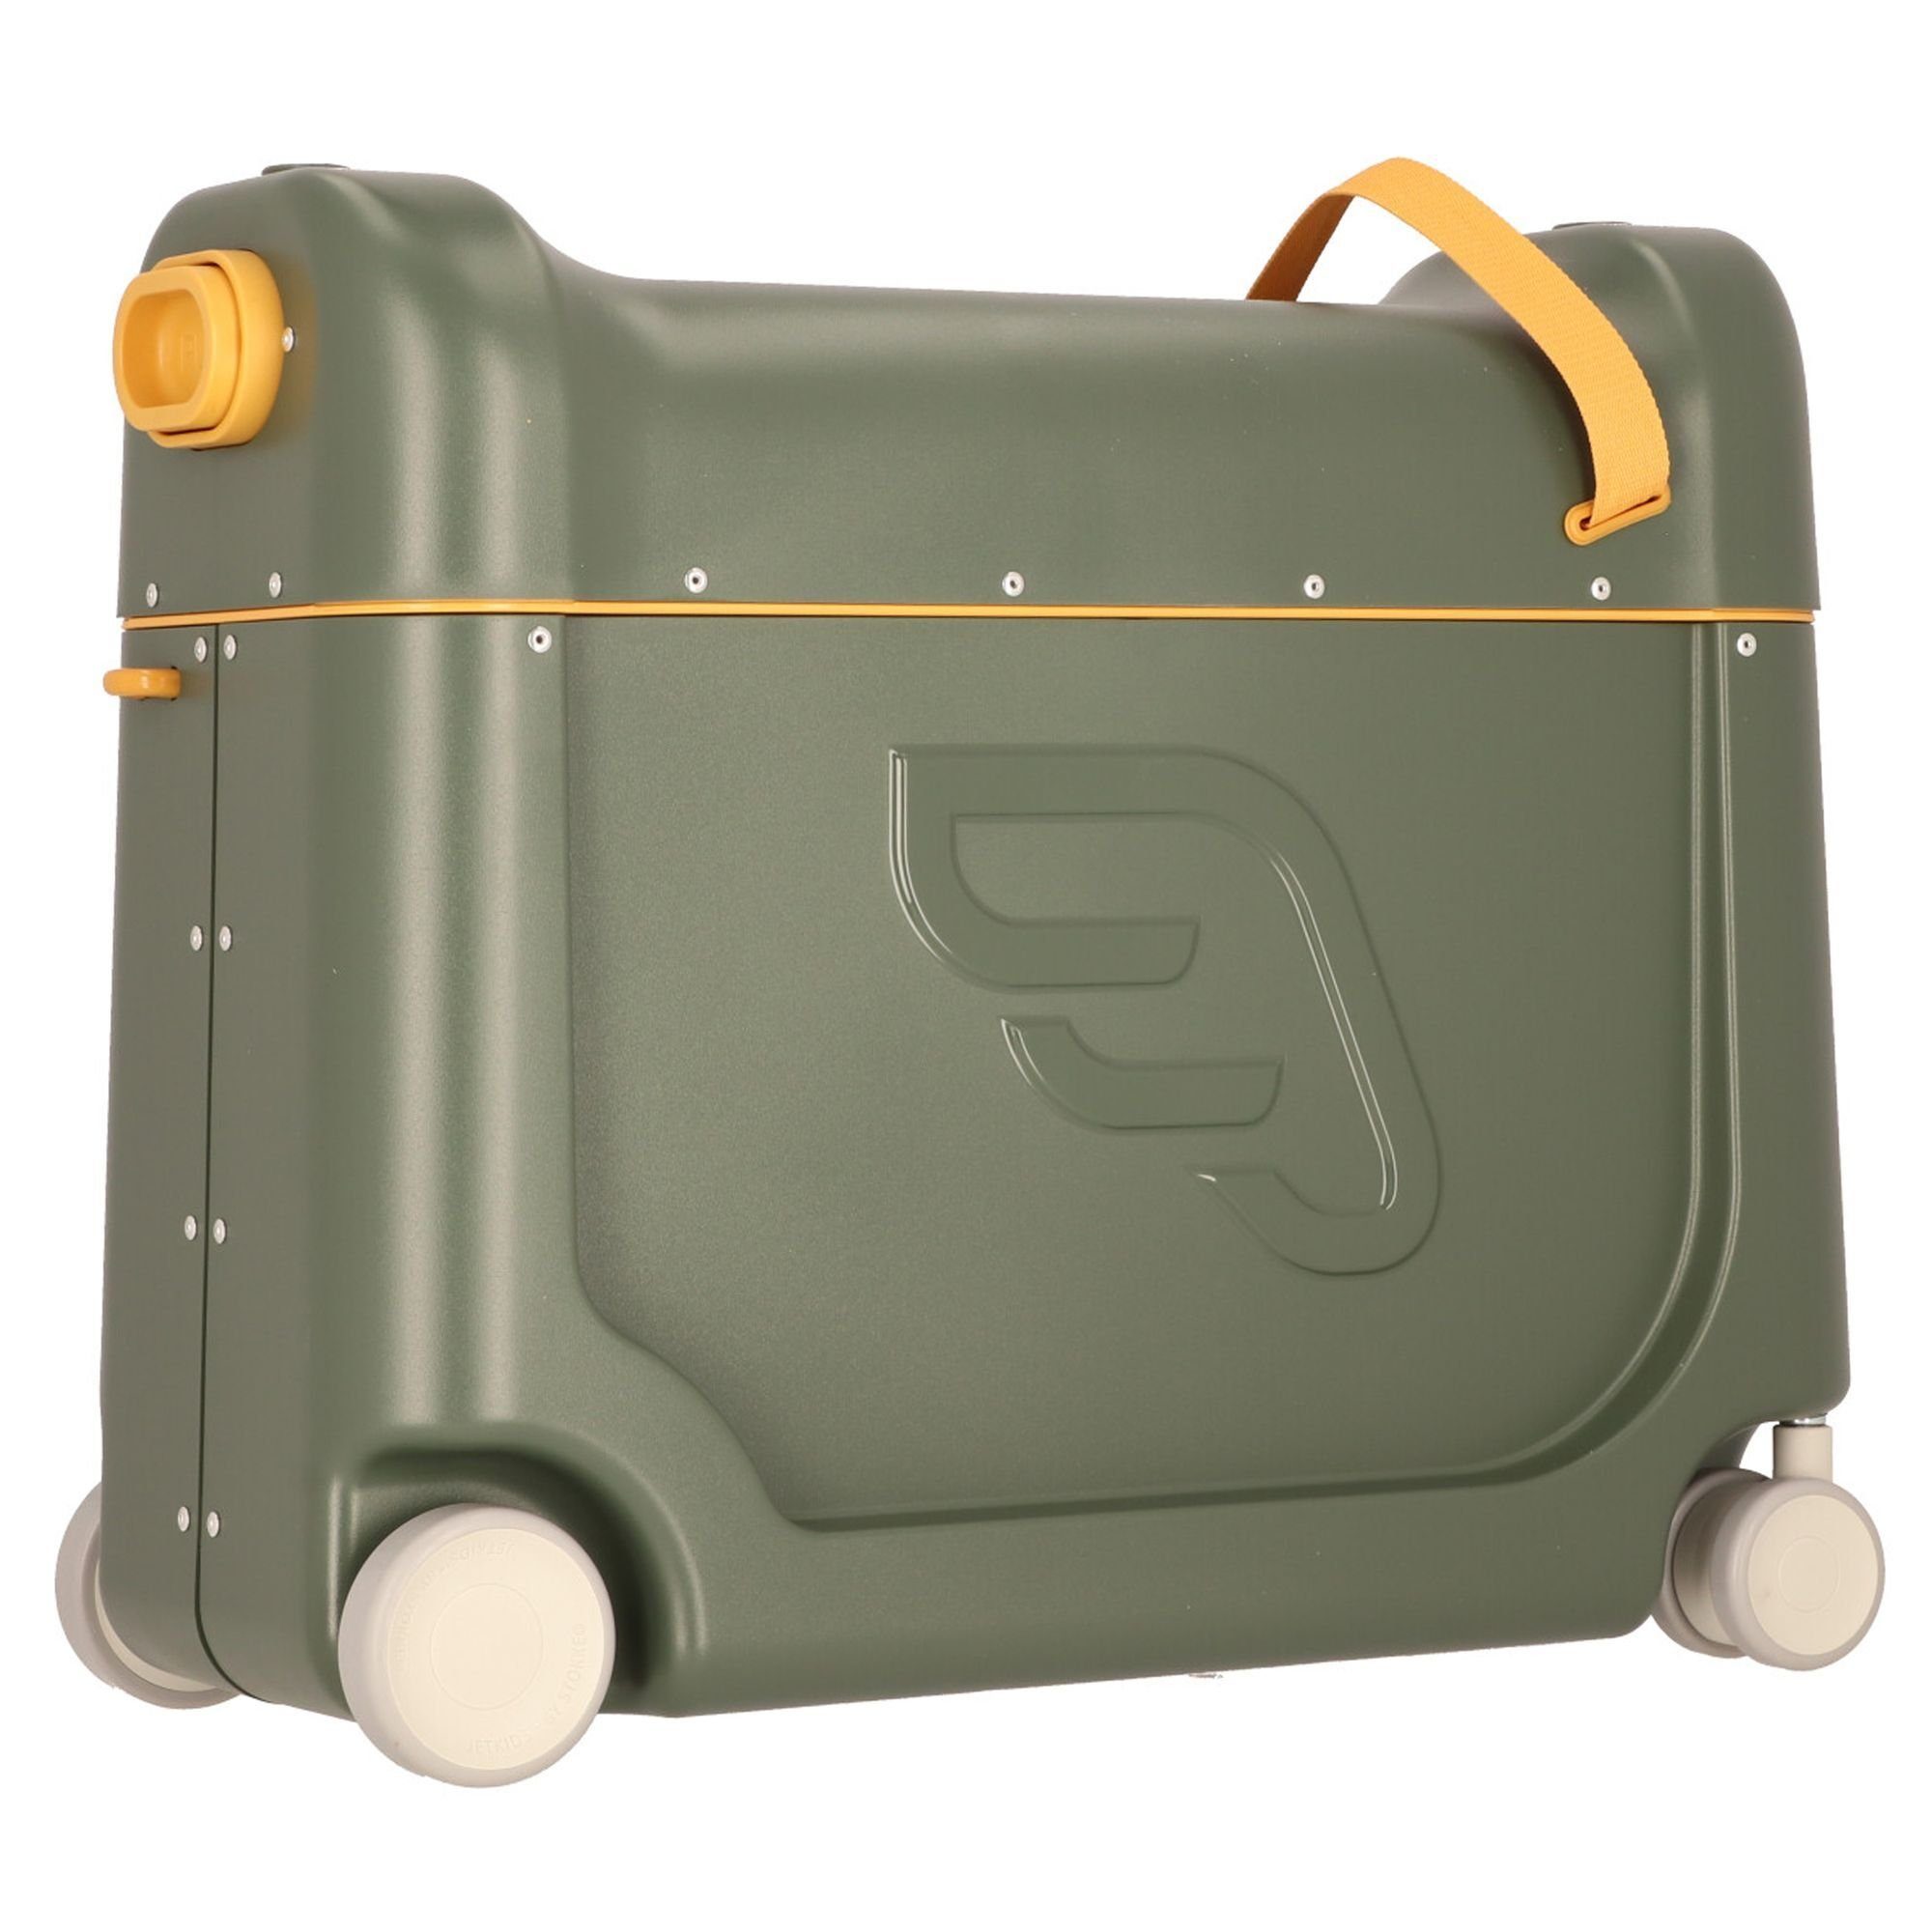 Stokke Jetkids Kinderkoffer BedBox, 4 olive ABS golden Rollen